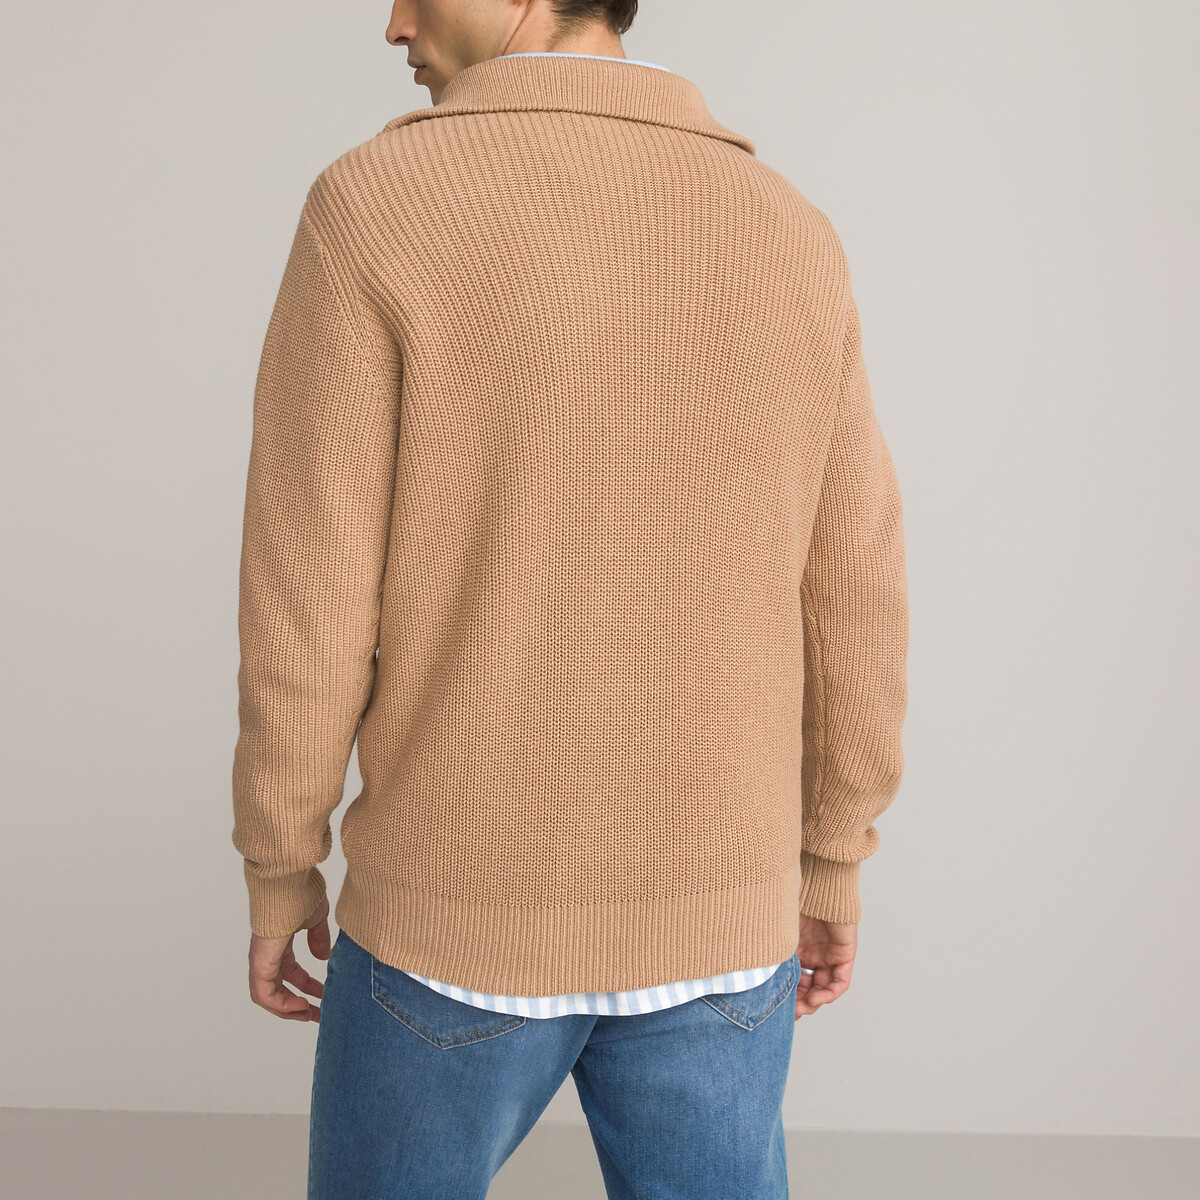 Пуловер С воротником-стойкой на молнии из биохлопка S бежевый LaRedoute, размер S - фото 3